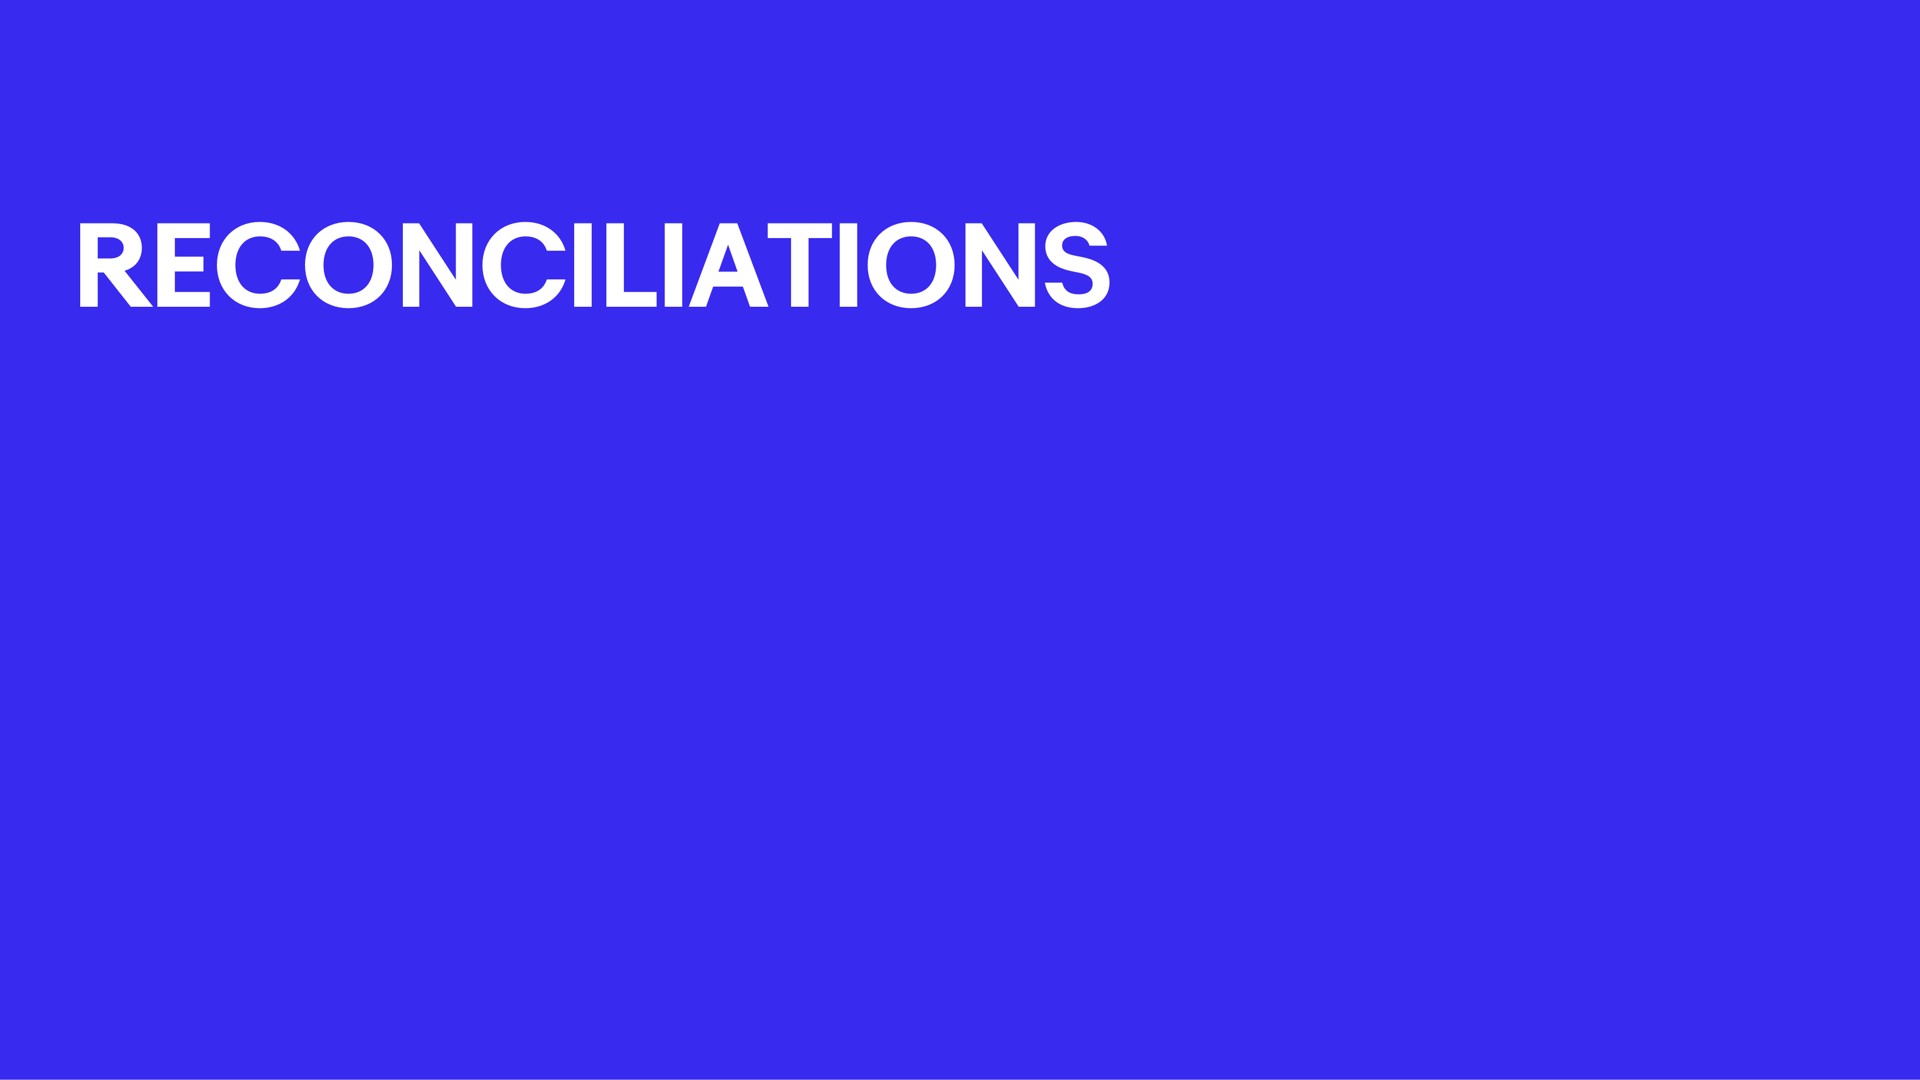 reconciliations | eBay